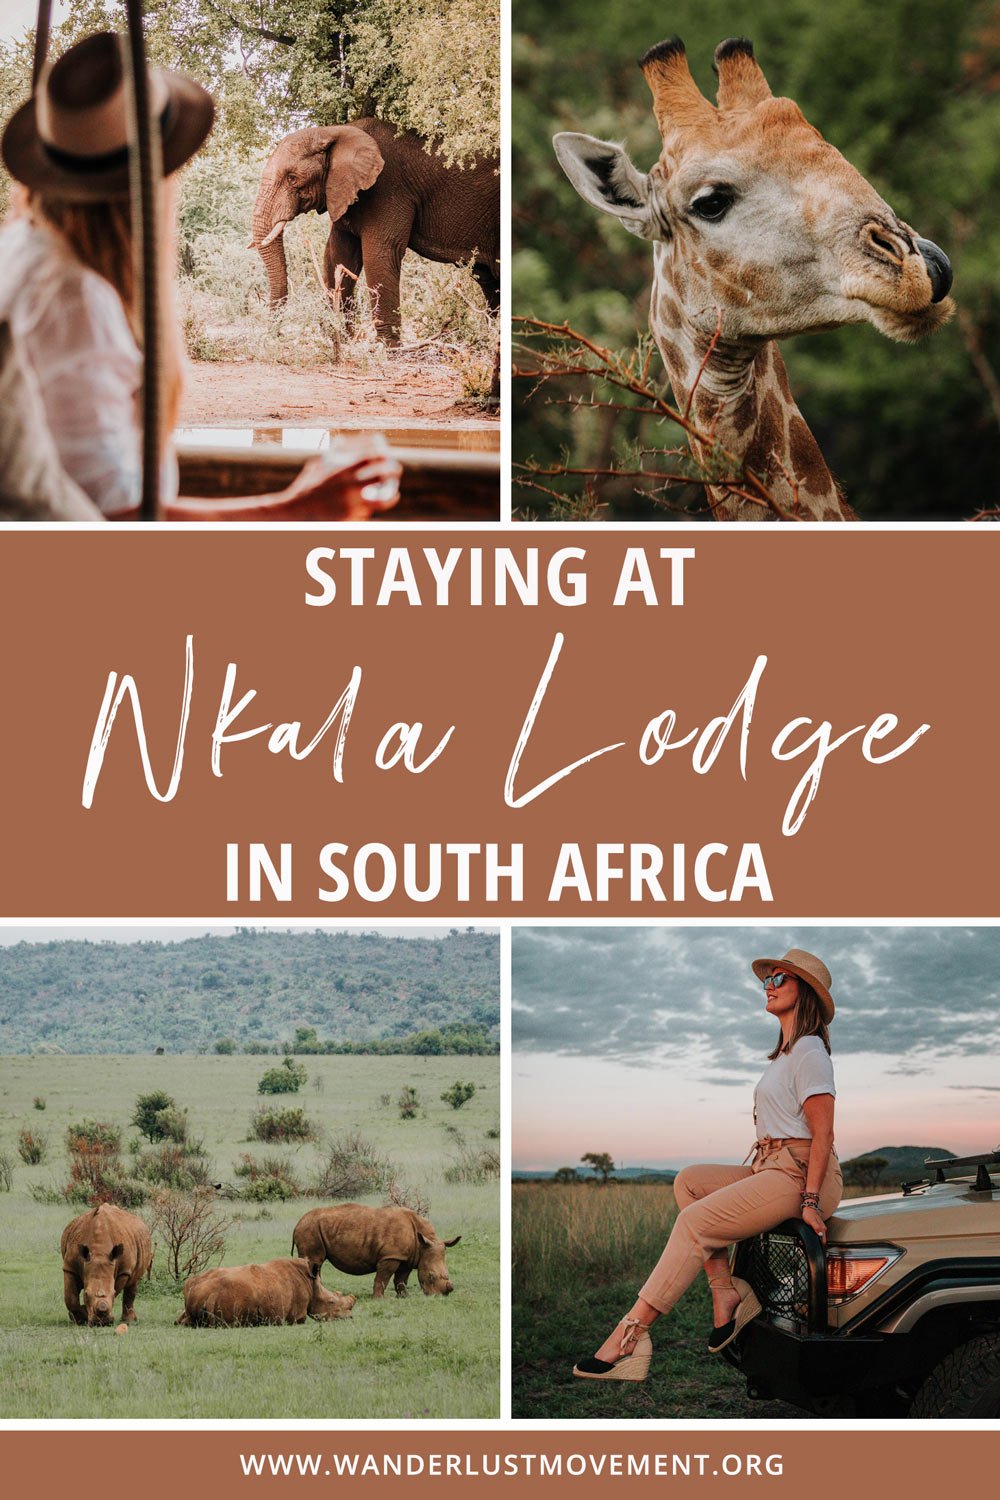 Nkala Lodge: An Exclusive Luxury Safari Getaway in Pilanesberg